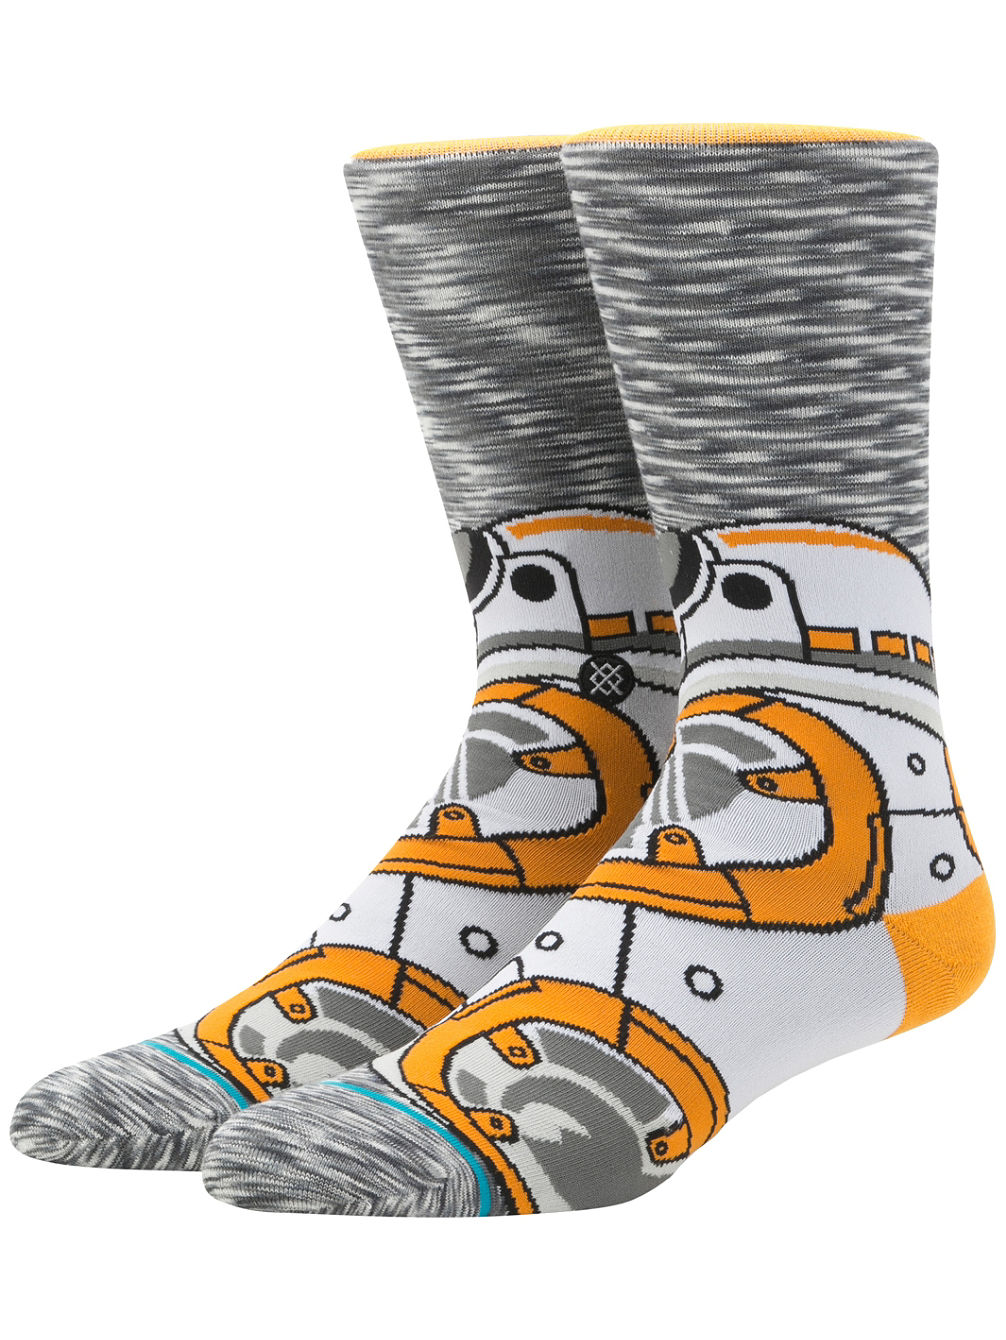 BB-8 Star Wars Socks